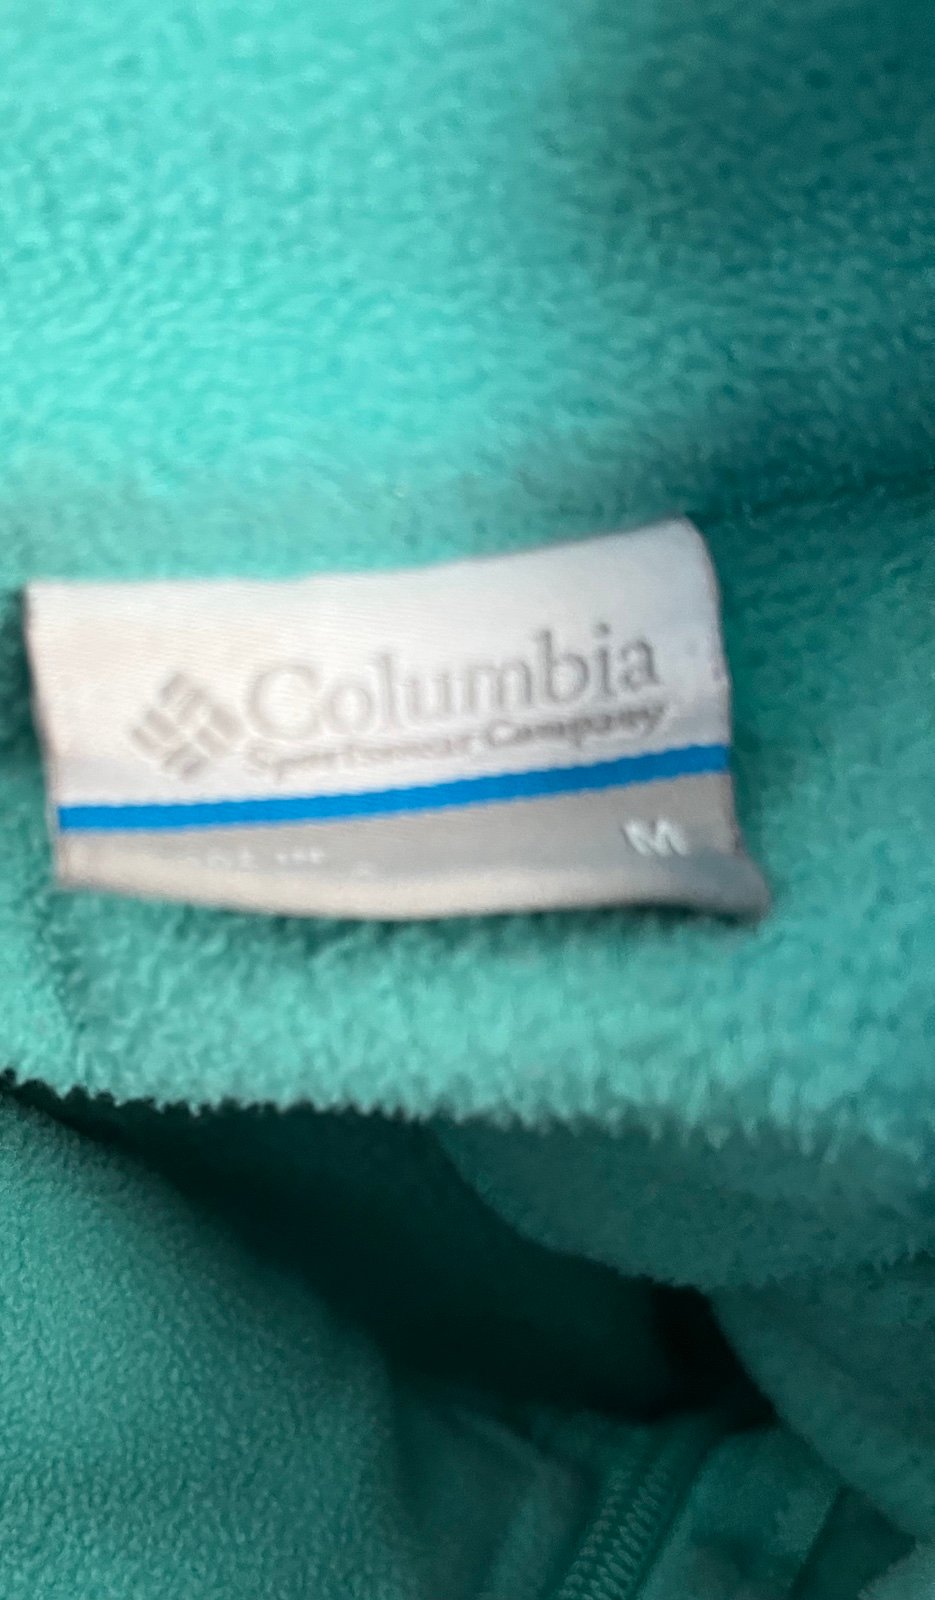 high discount Columbia Fleece Jacket Womens Medium g4a59j02d Buying Cheap